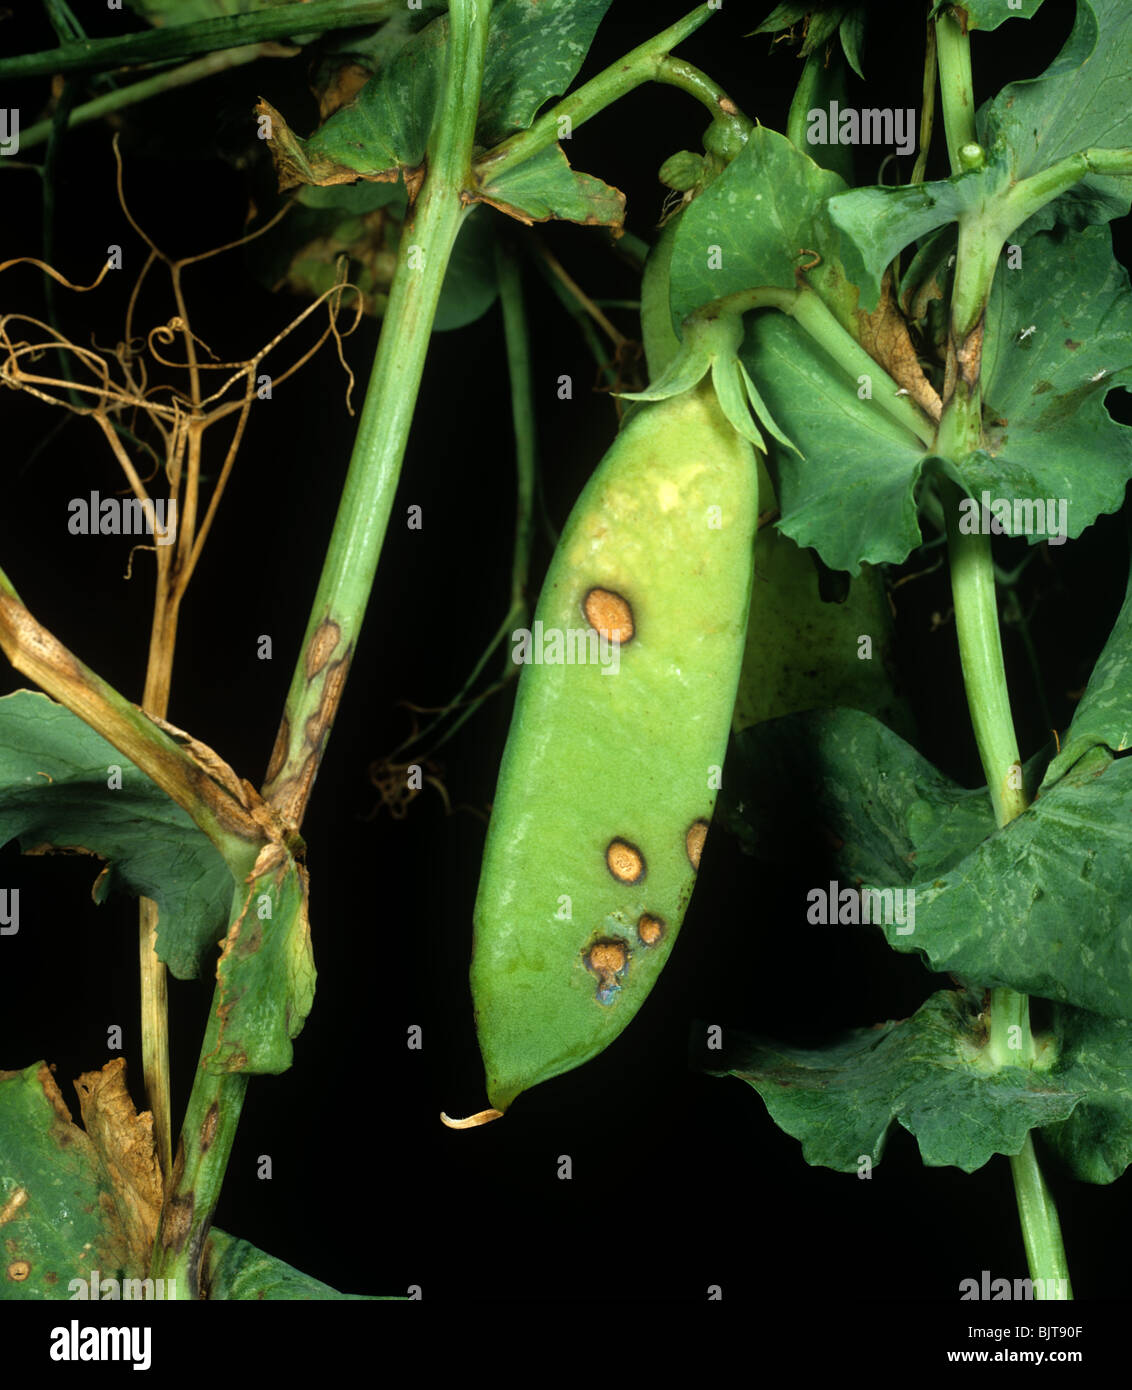 Ascochyta leaf & pod spot (Ascochyta pisi) on pea stem and pods Stock Photo